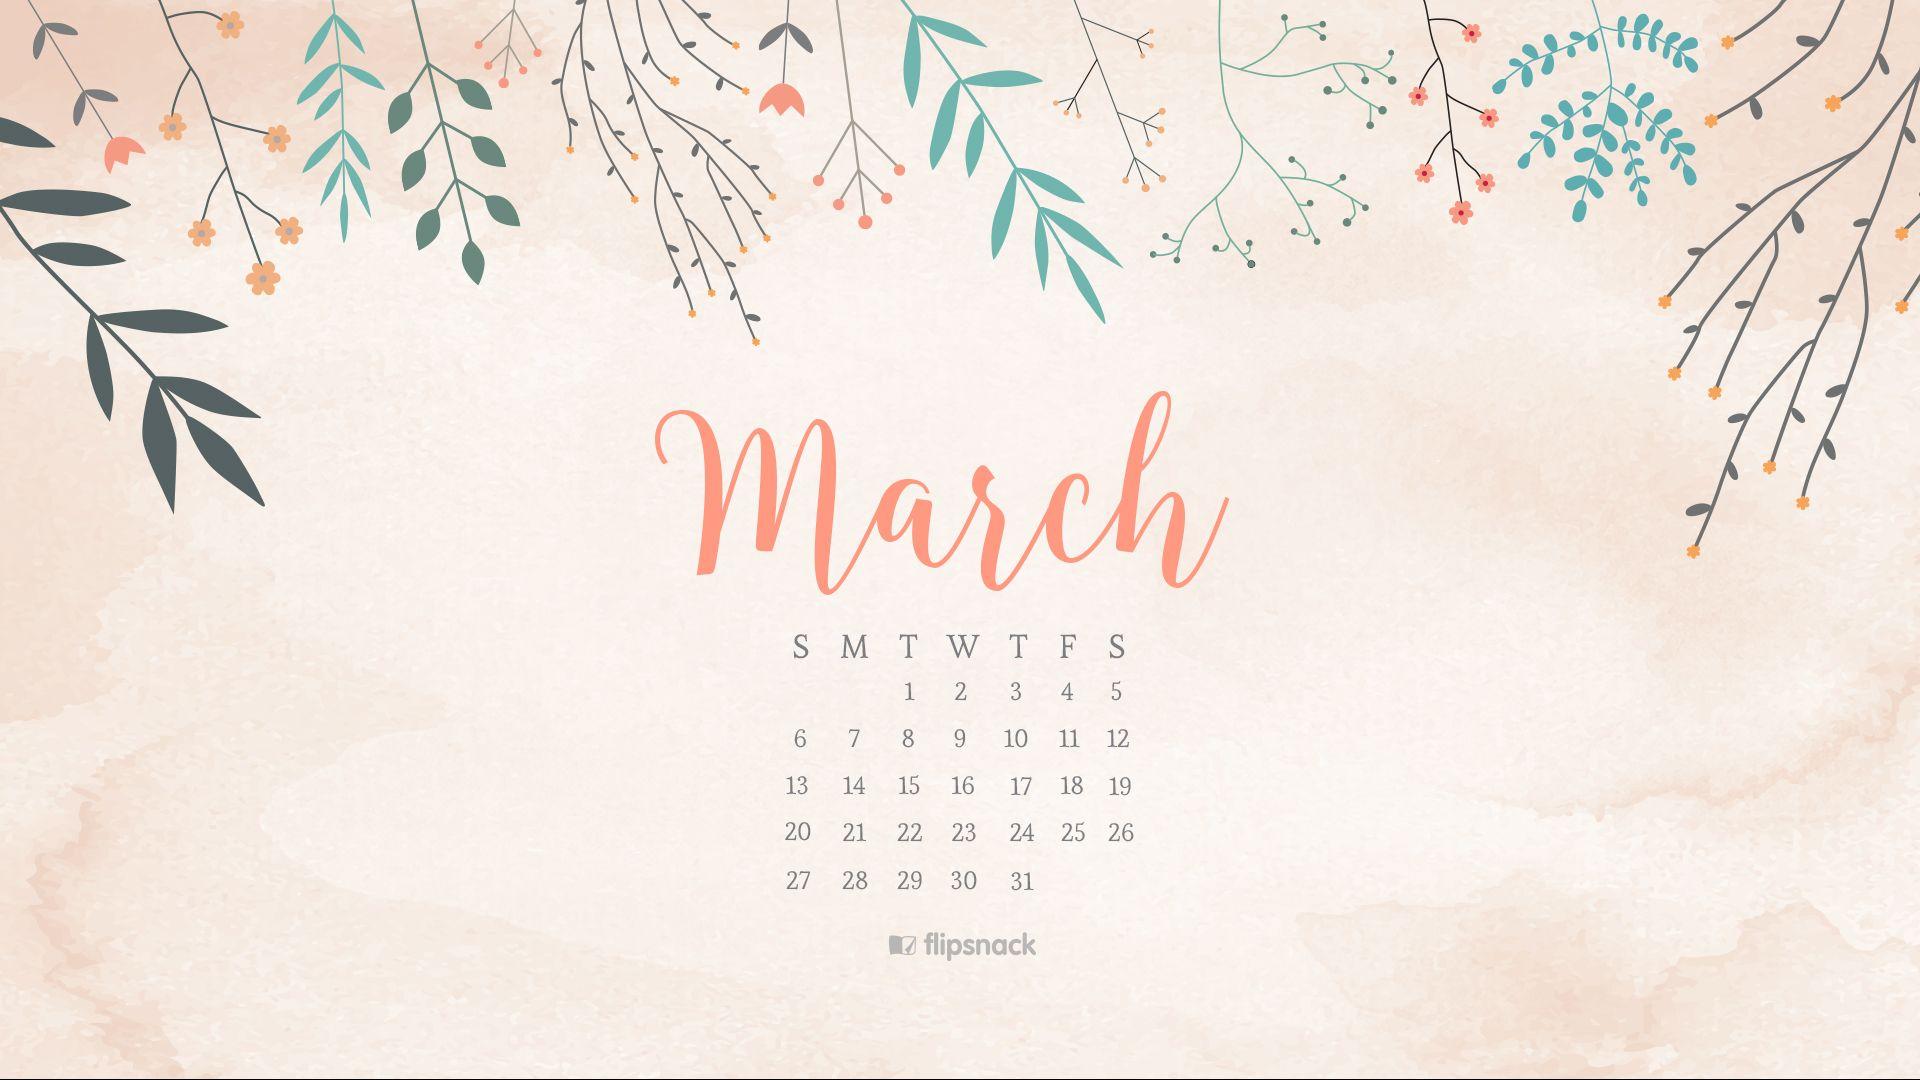 March 2016 free calendar wallpaper